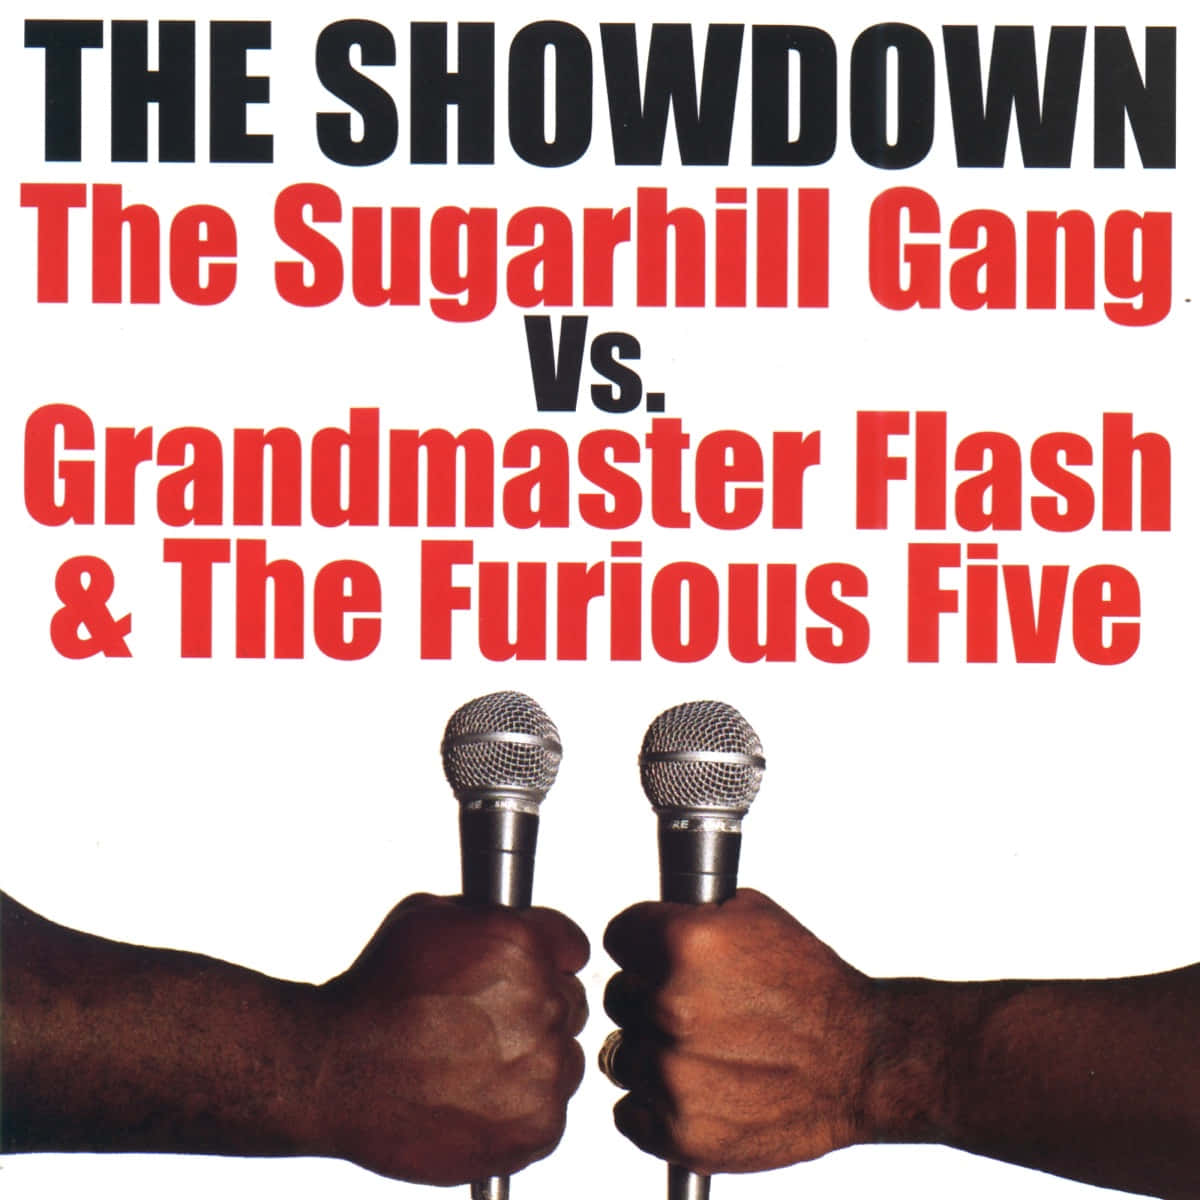 Sugerhill Gang Grandmaster Flash And The Furious Five rapmotiv gjorde baggrundsbilledet med en vild vibrerende farve. Wallpaper